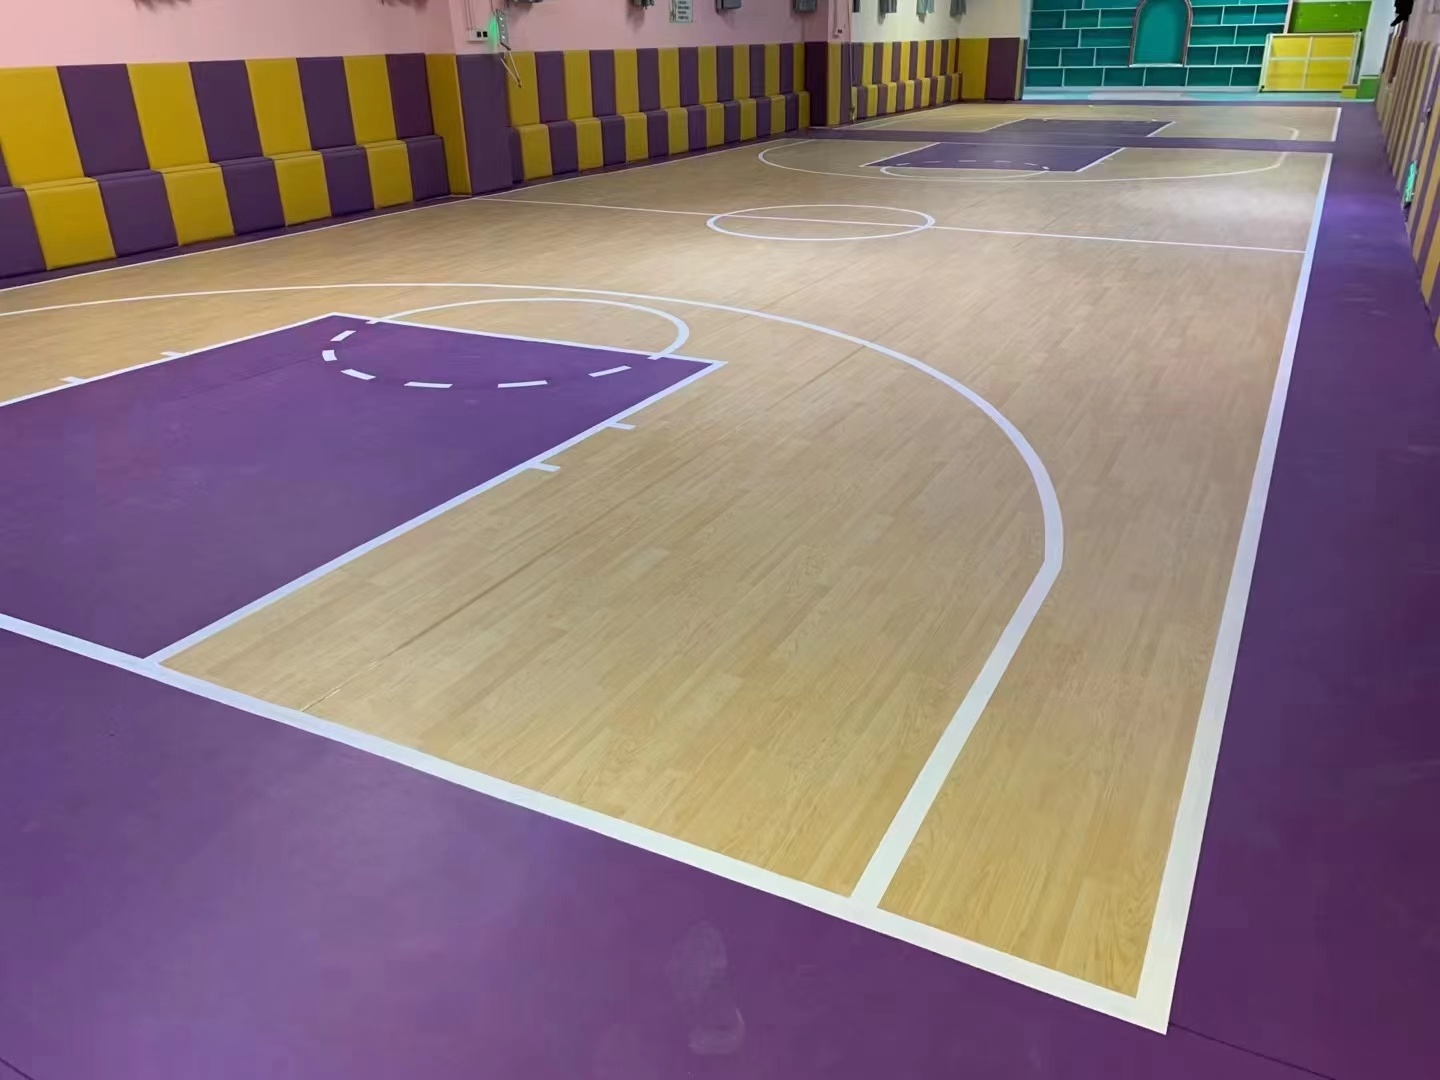 昆明专业室内篮球场运动地胶，商用耐磨羽毛球乒乓球场pvc塑胶地板地垫，运动地板，曼纳奇PVC运动地板示例图6